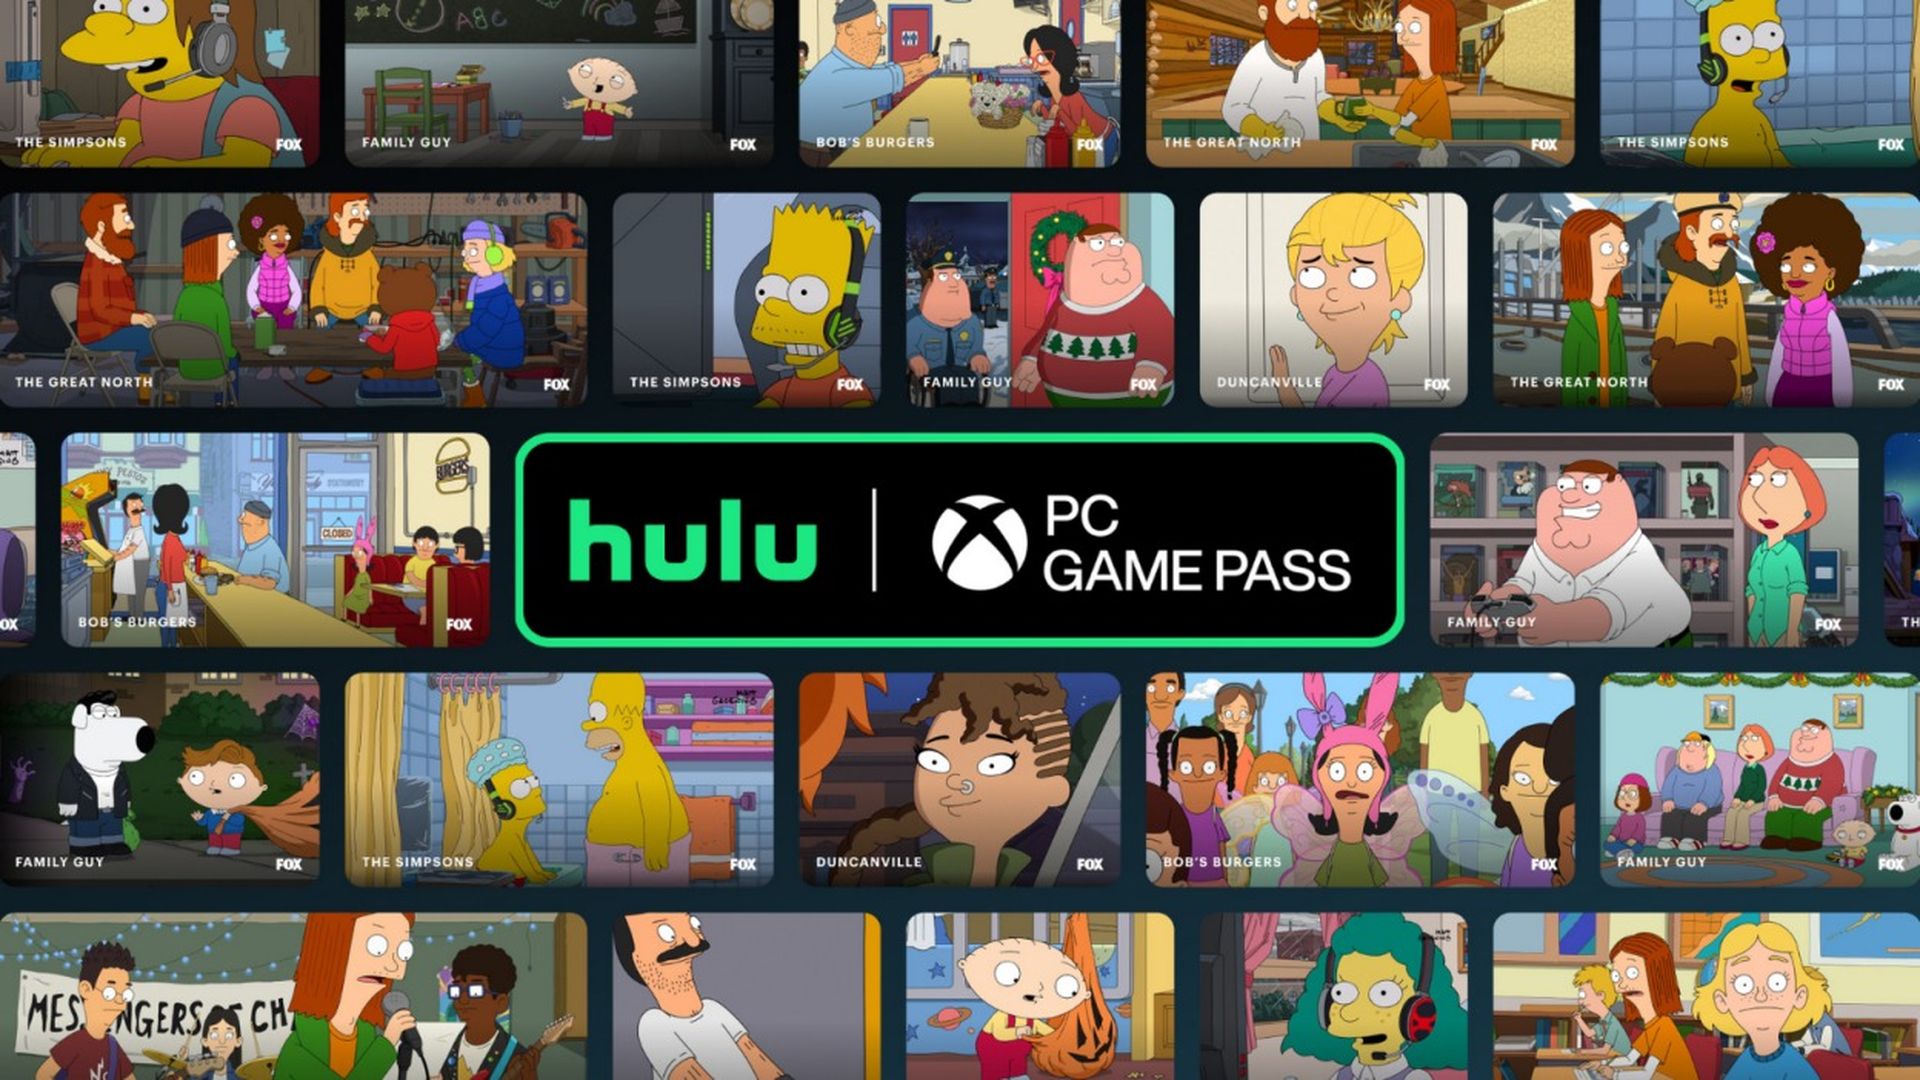 Dzięki niedawnej promocji Hulu Game Pass na komputery PC oferuje 3 miesiące bezpłatnego użytkowania w ramach subskrypcji strumieniowych gier Xbox i EA.